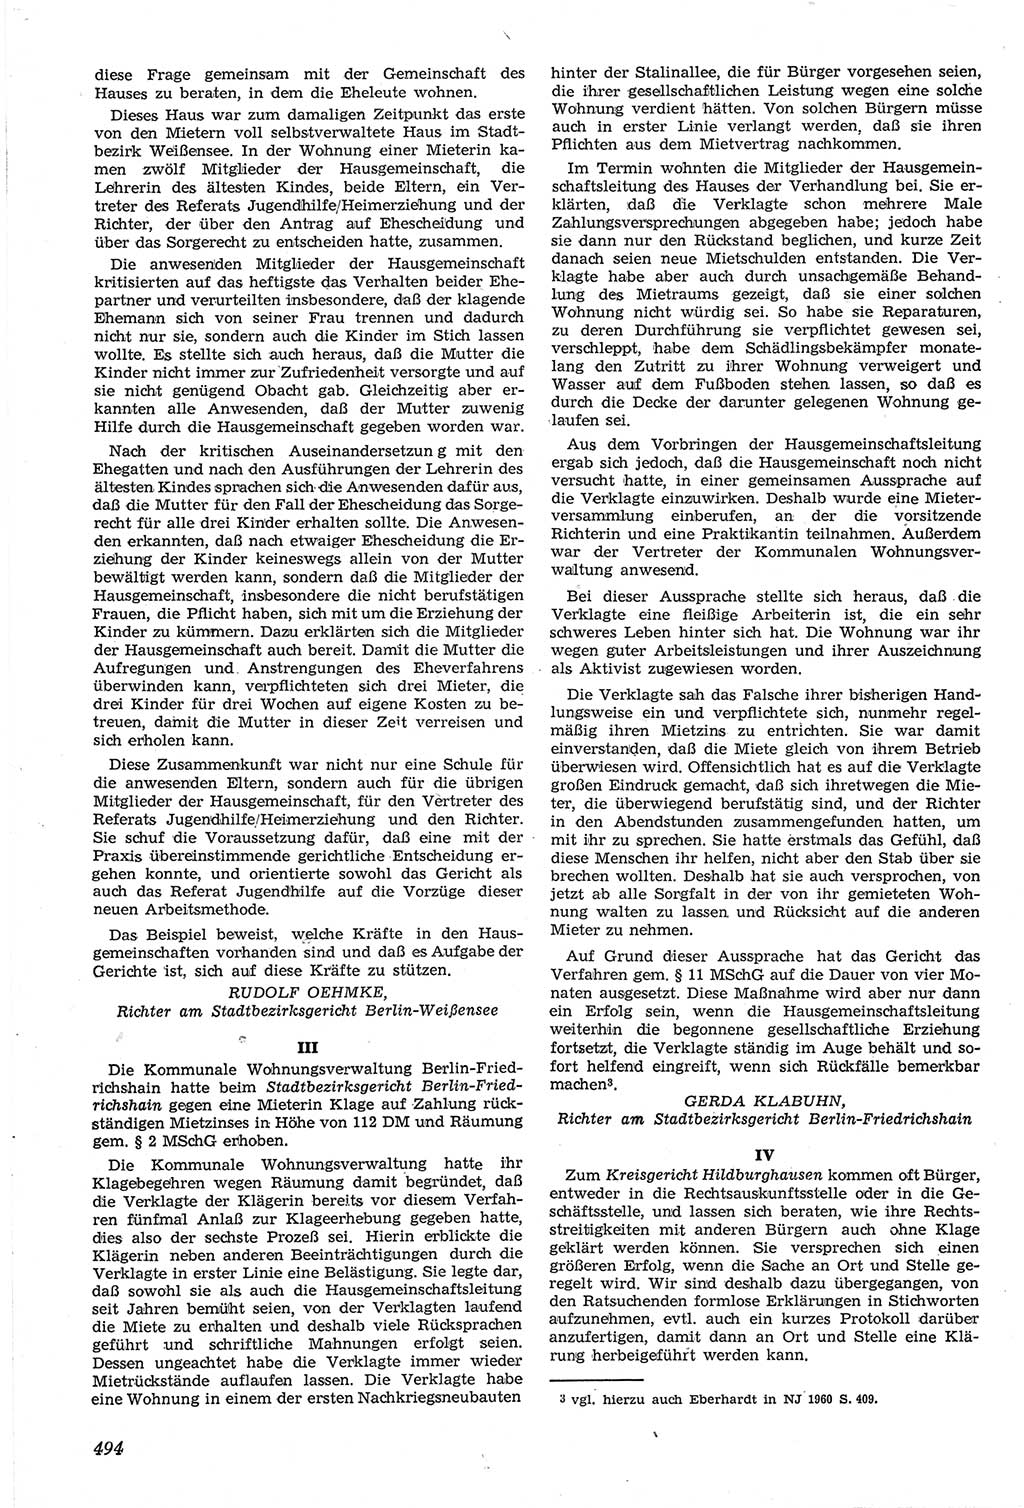 Neue Justiz (NJ), Zeitschrift für Recht und Rechtswissenschaft [Deutsche Demokratische Republik (DDR)], 14. Jahrgang 1960, Seite 494 (NJ DDR 1960, S. 494)